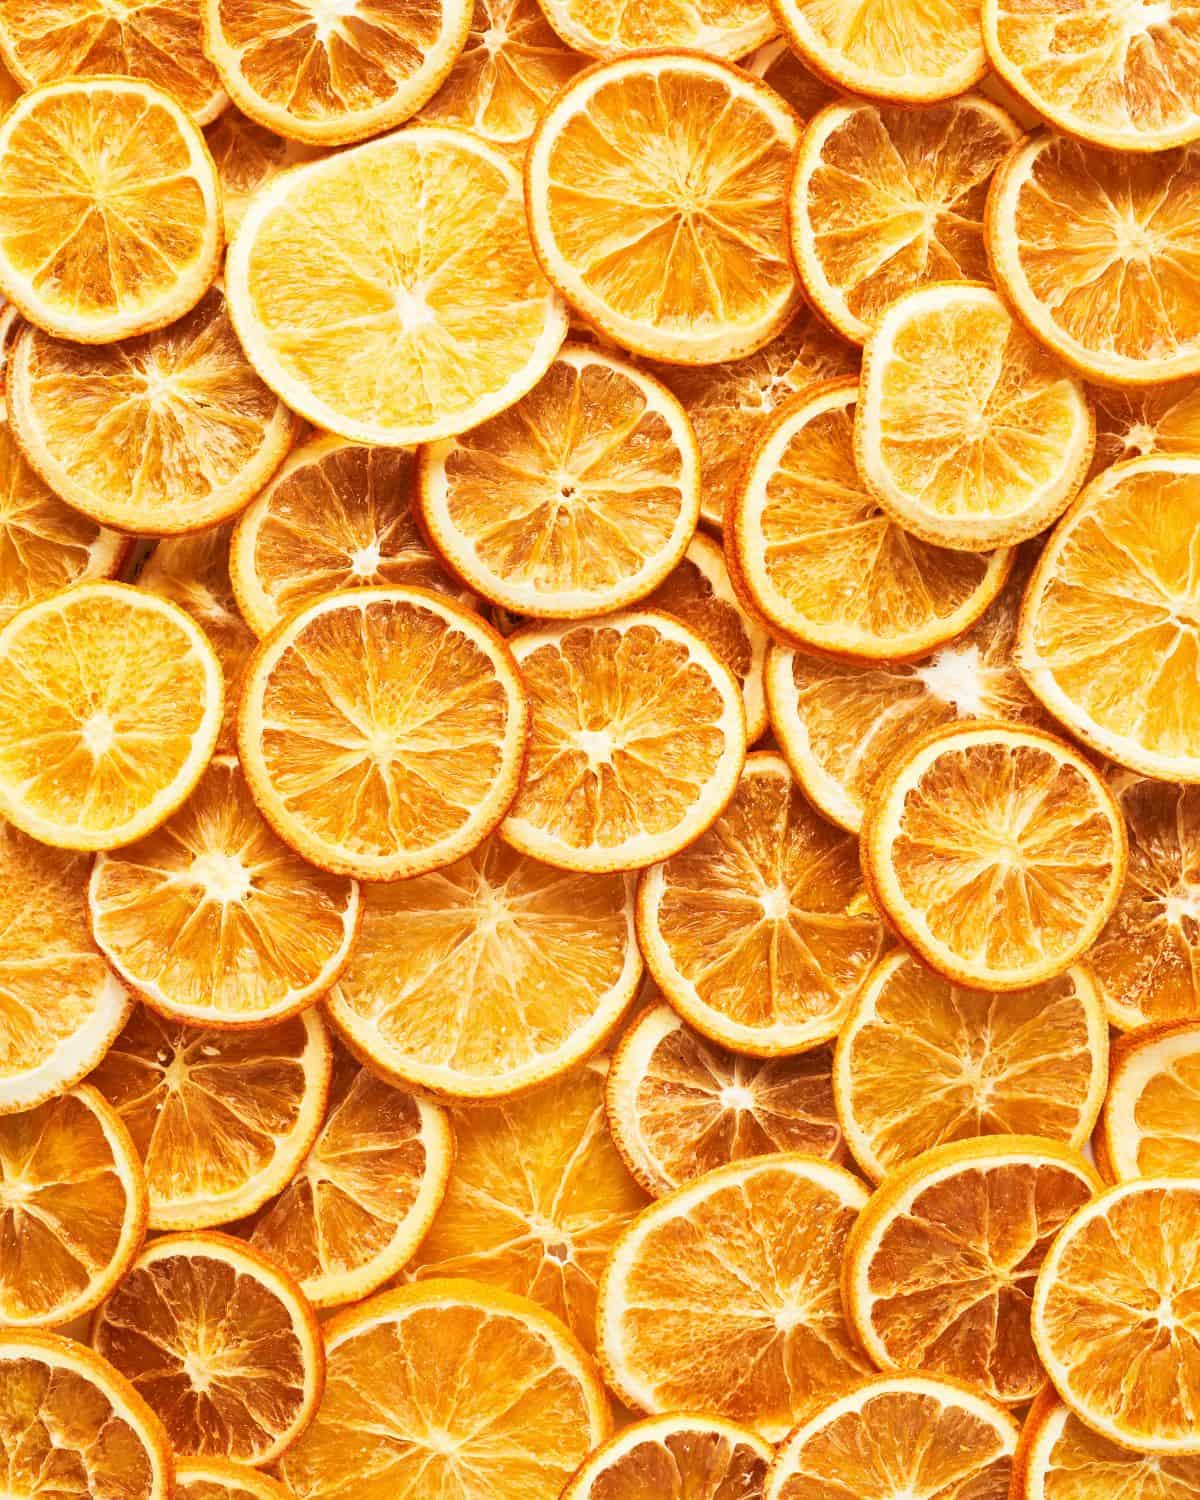 Overhead image of dry orange slices.